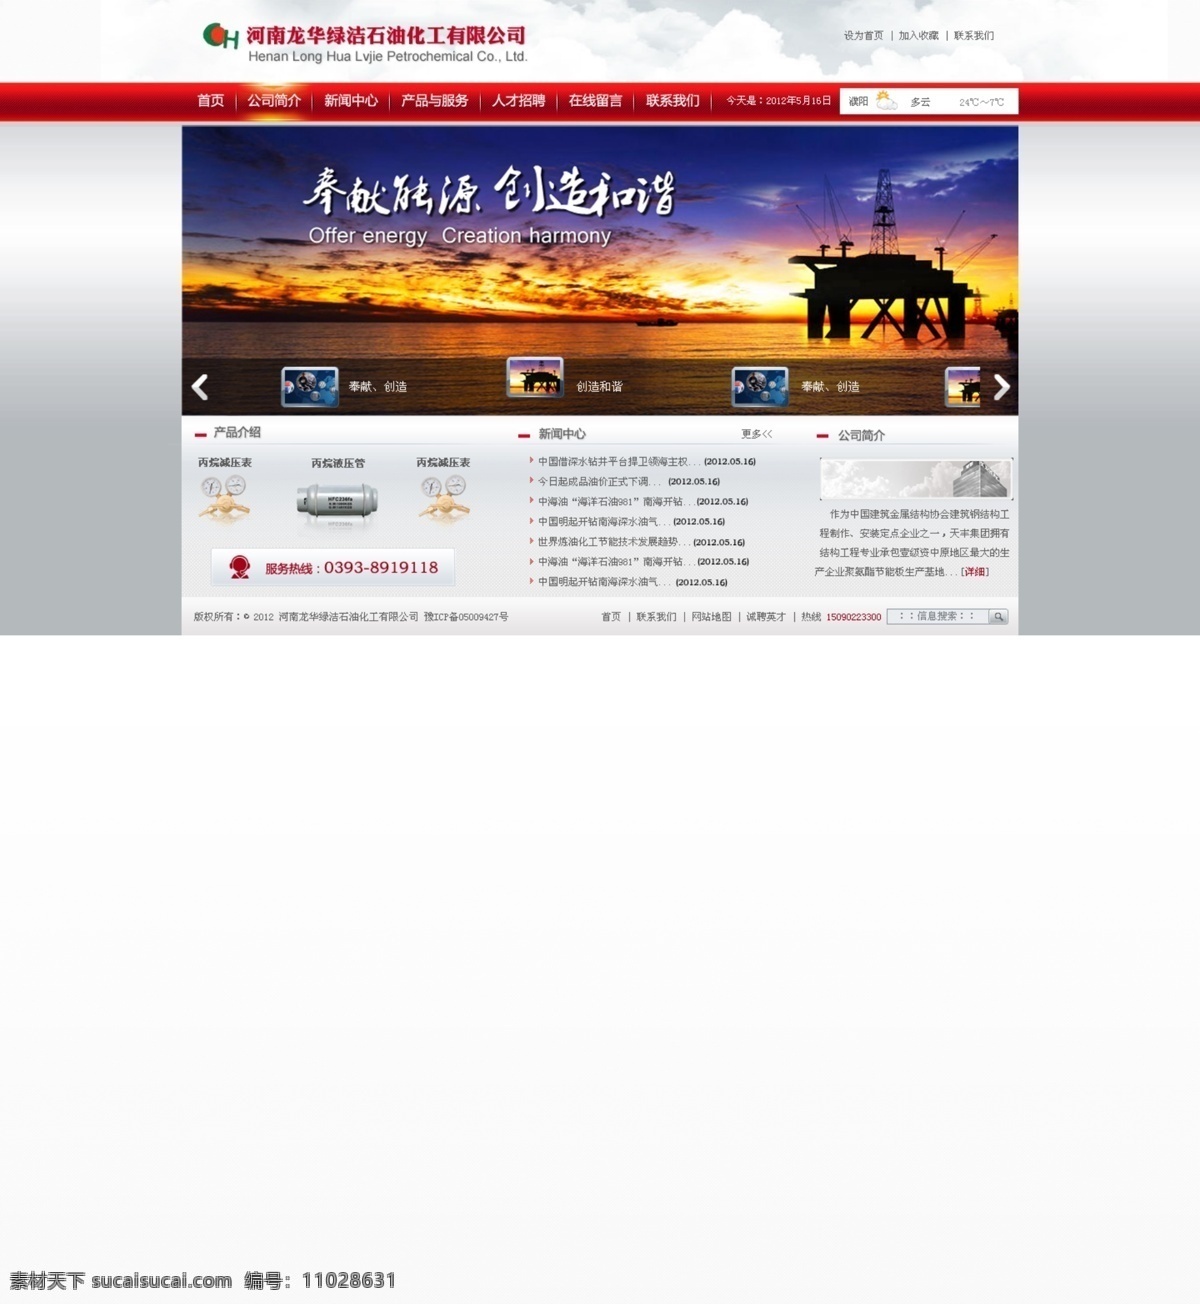 石油化工网站 石油网站 中文模板网站 企业网站 模板 网站 中文模版 网页模板 源文件